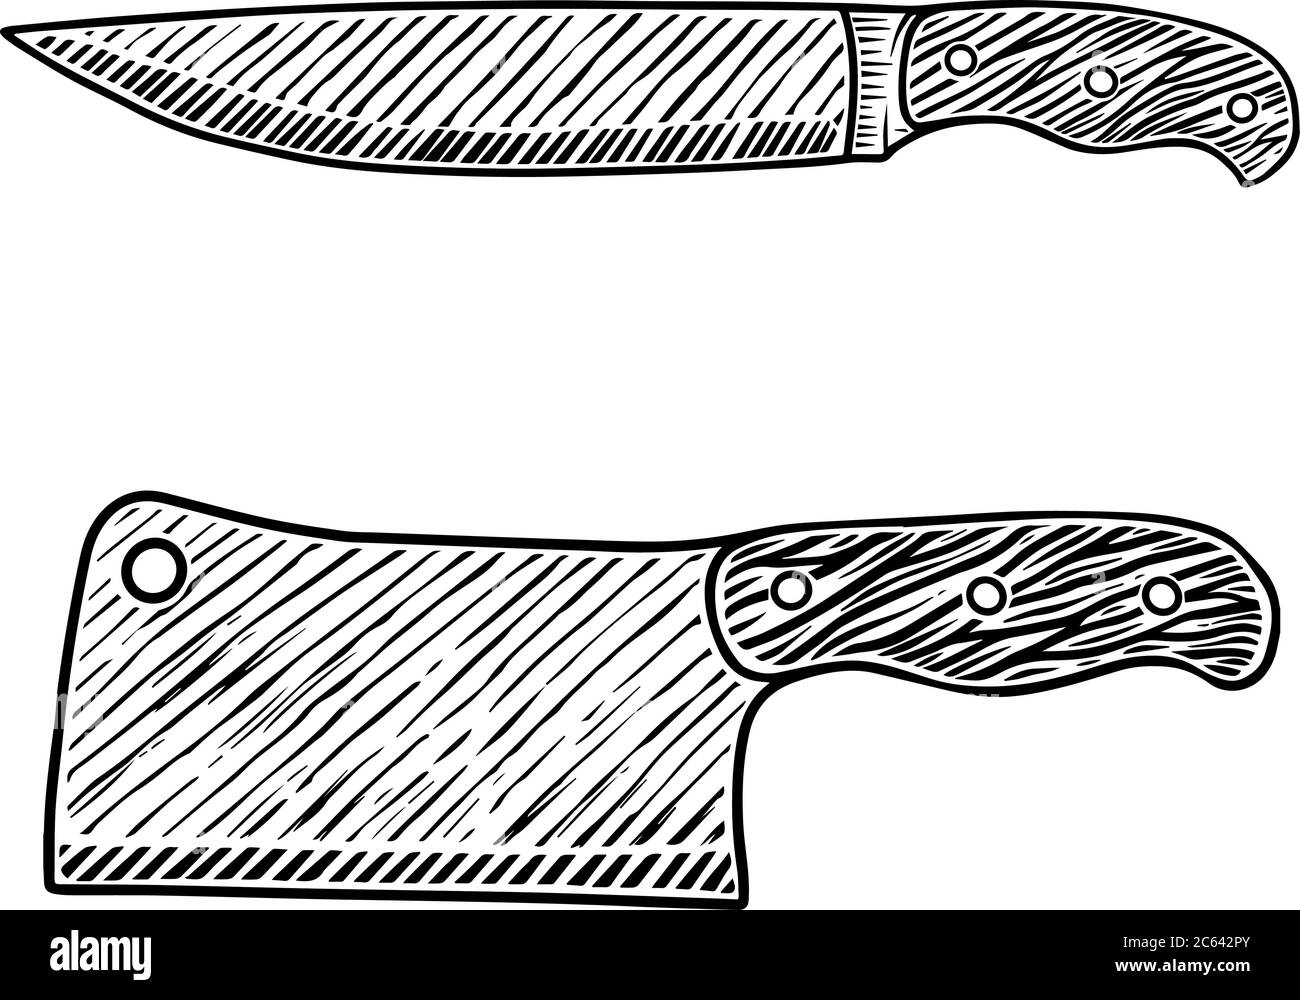 Illustration of meat cleaver and butcher knife in engraving style. Design element for logo, label, emblem, sign, badge. Vector illustration Stock Vector